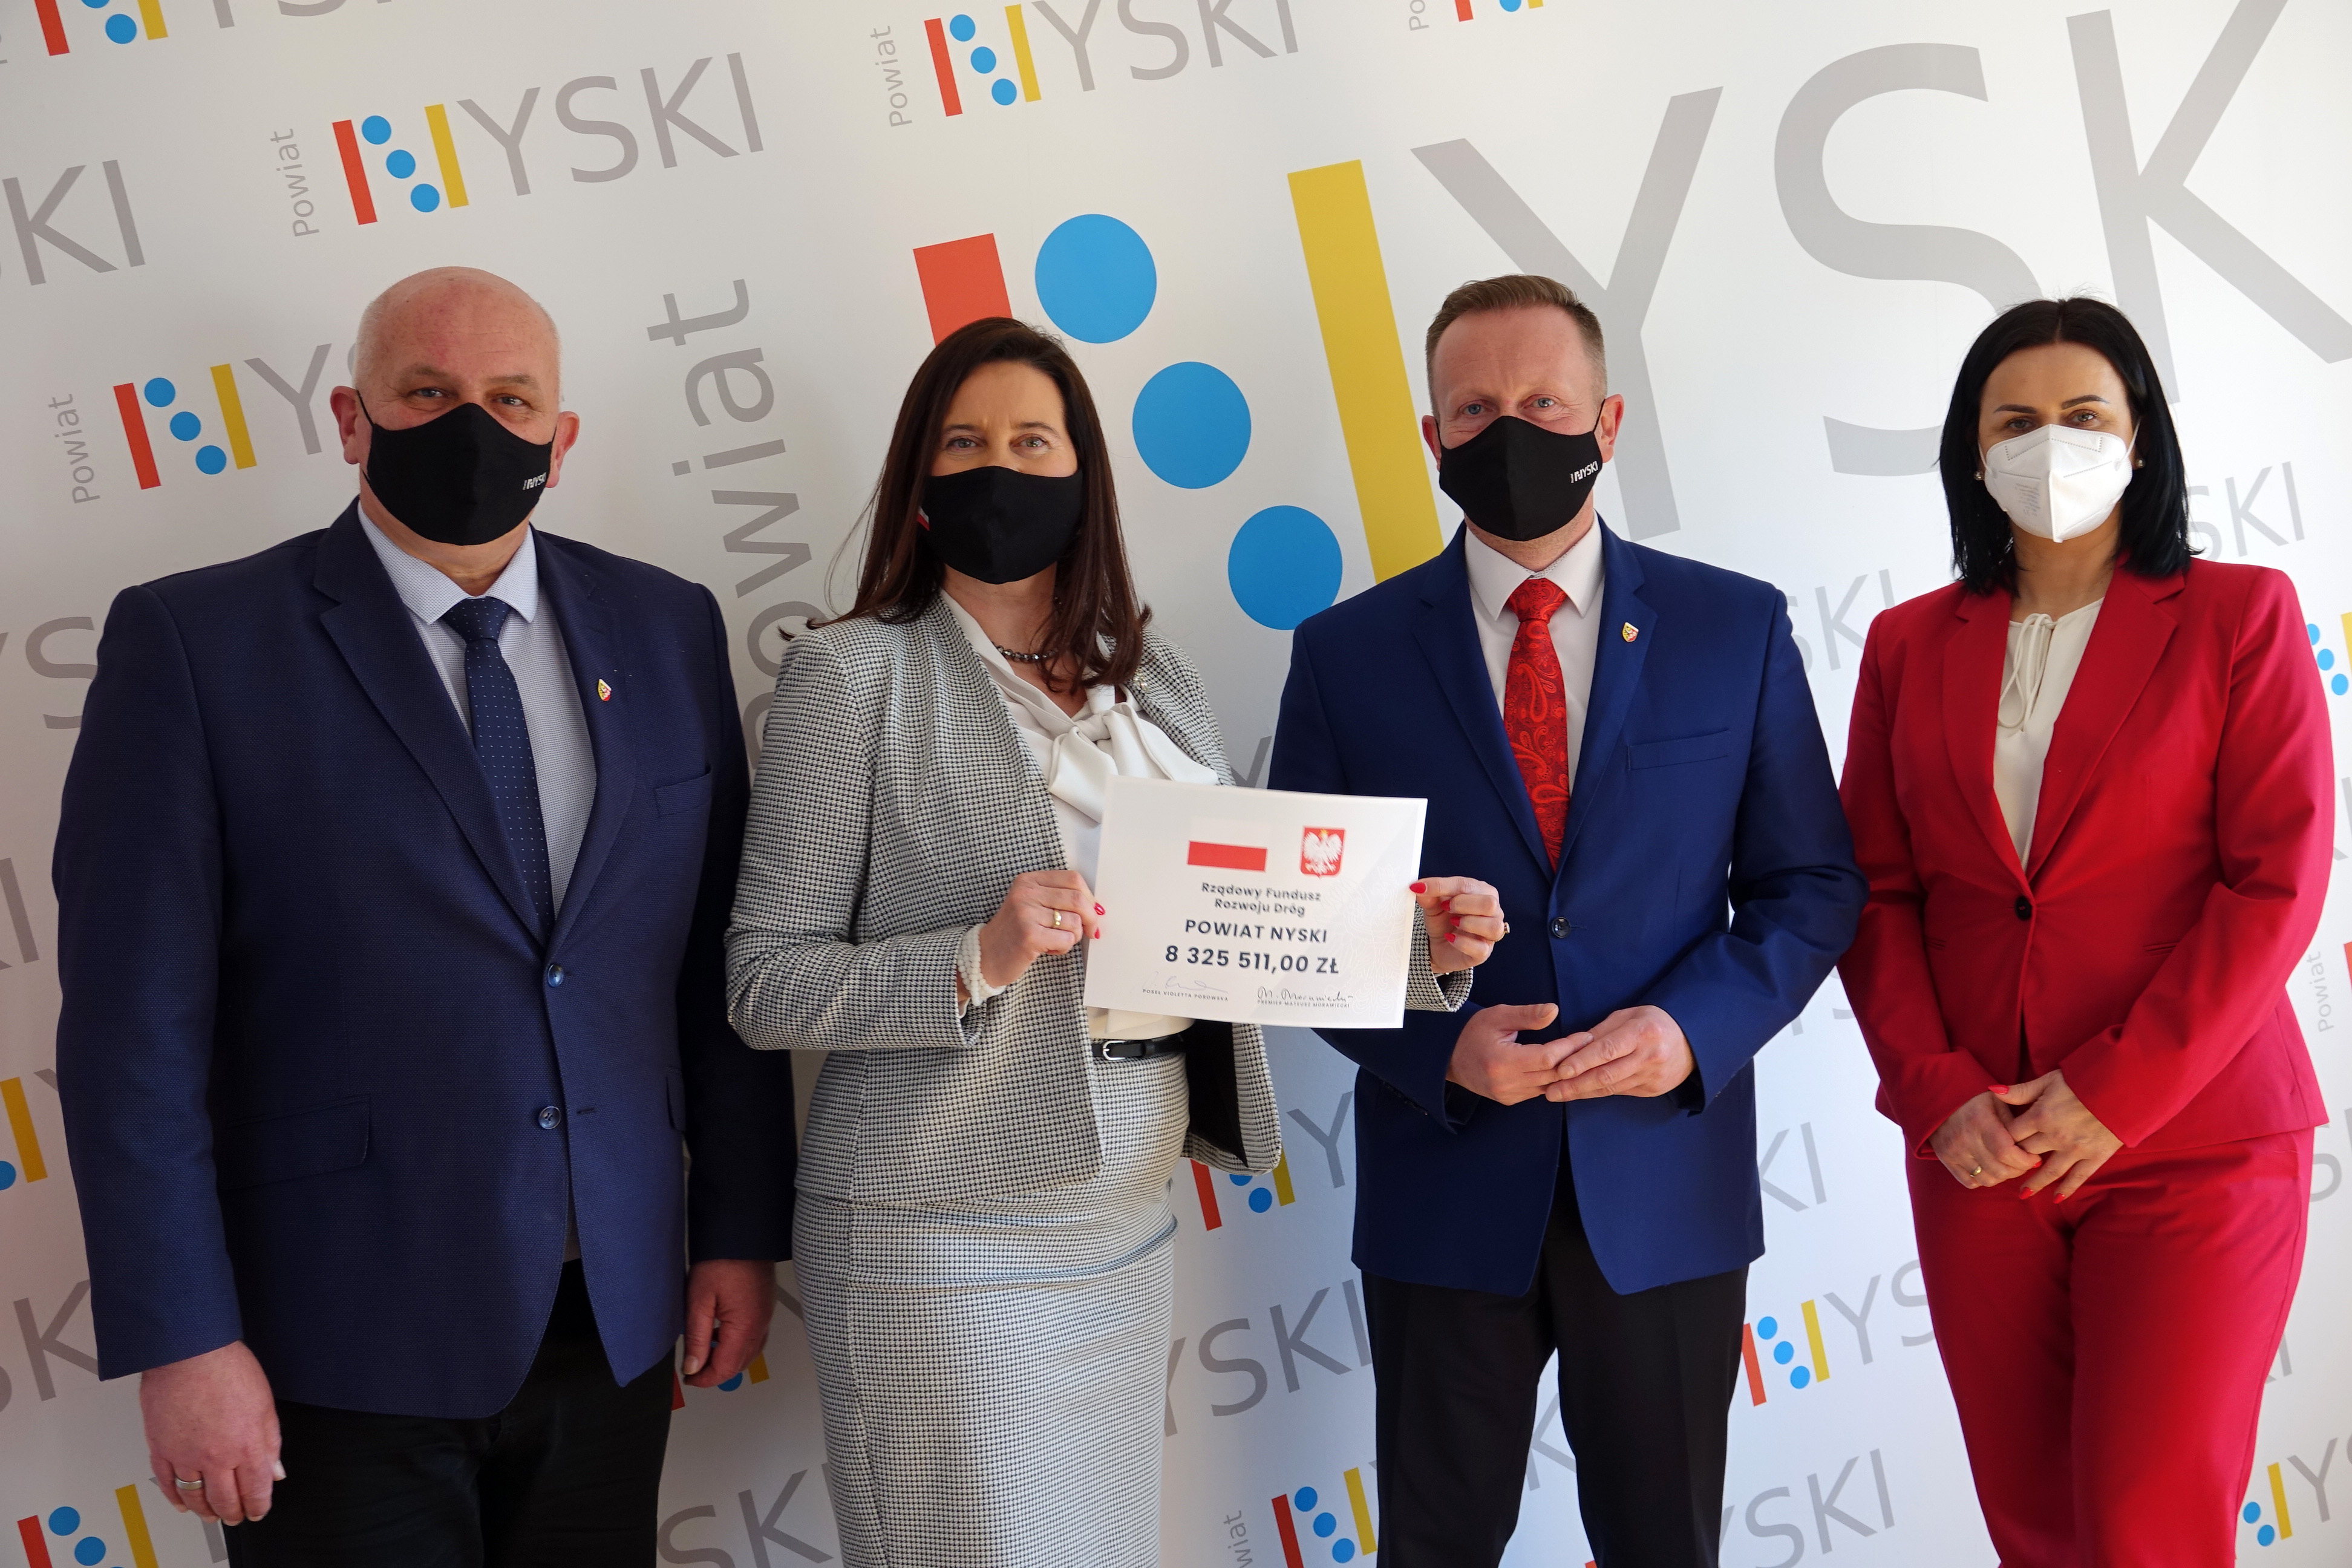 Zarząd Powiatu w Nysie z rąk poseł na Sejm Violetty Porowskiej otrzymał symboliczny czek na kwotę 8 325 511 zł.